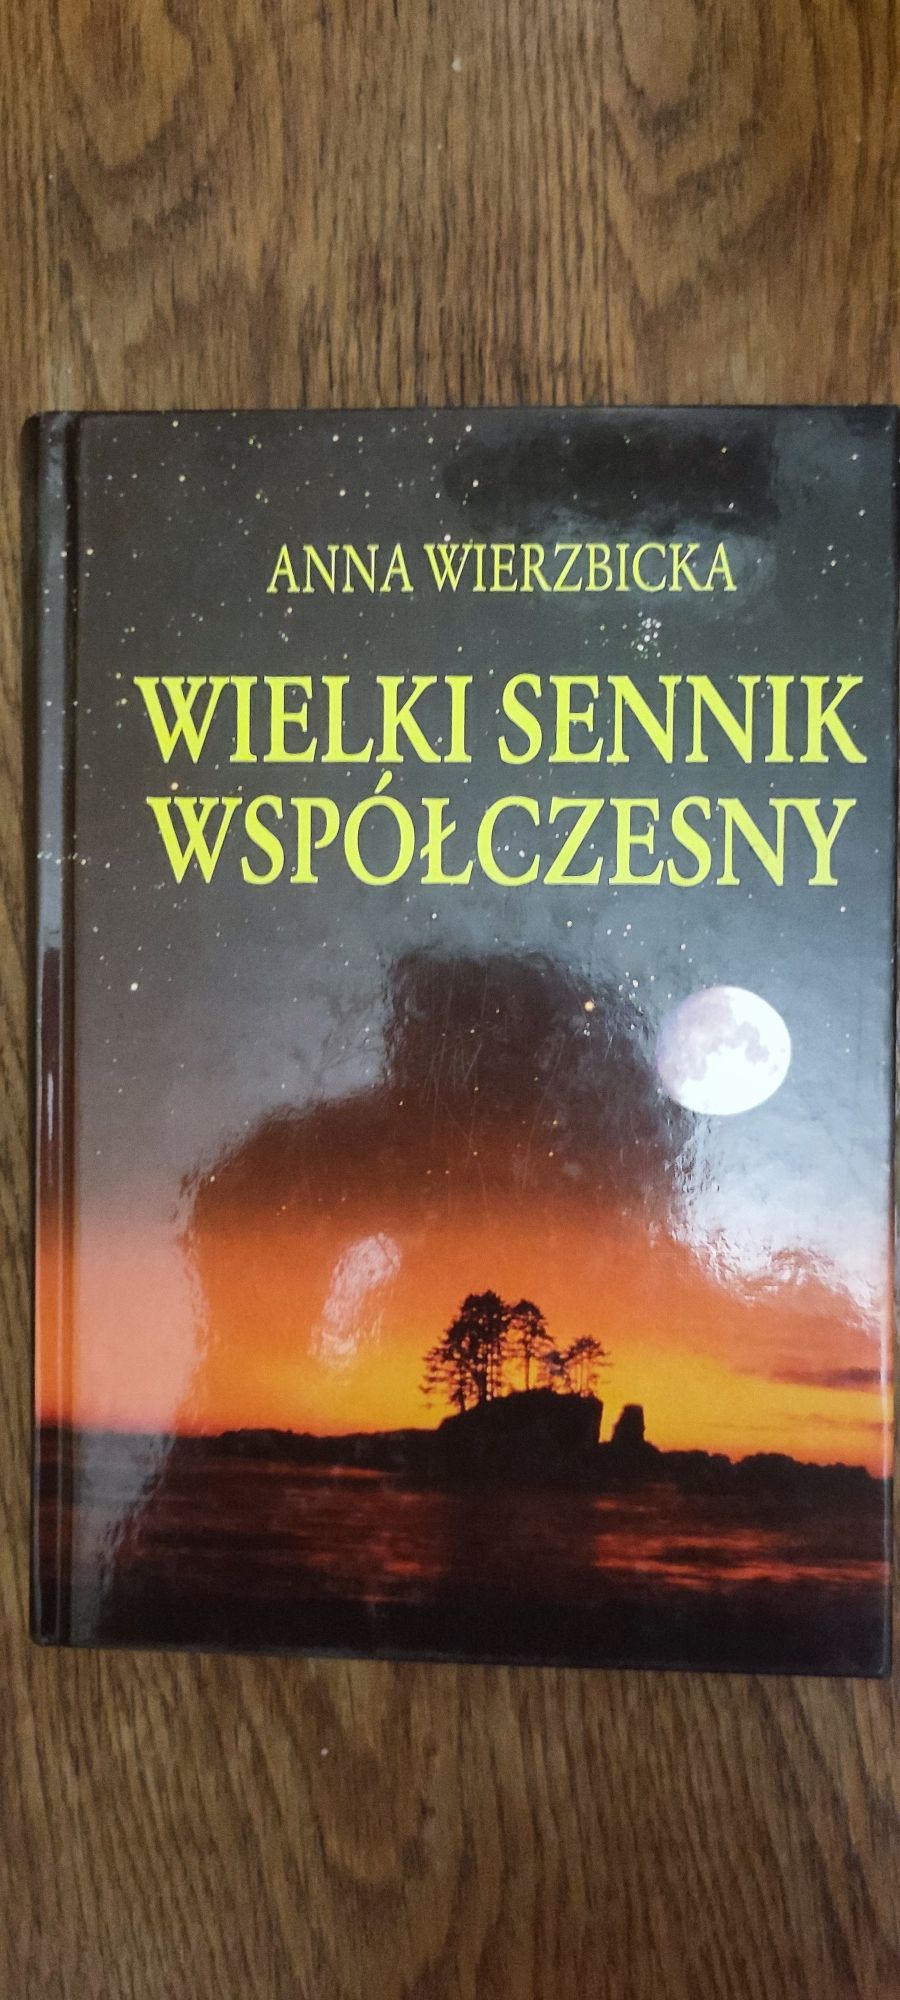 Wielki współczesny sennik Anna Wierzbicka